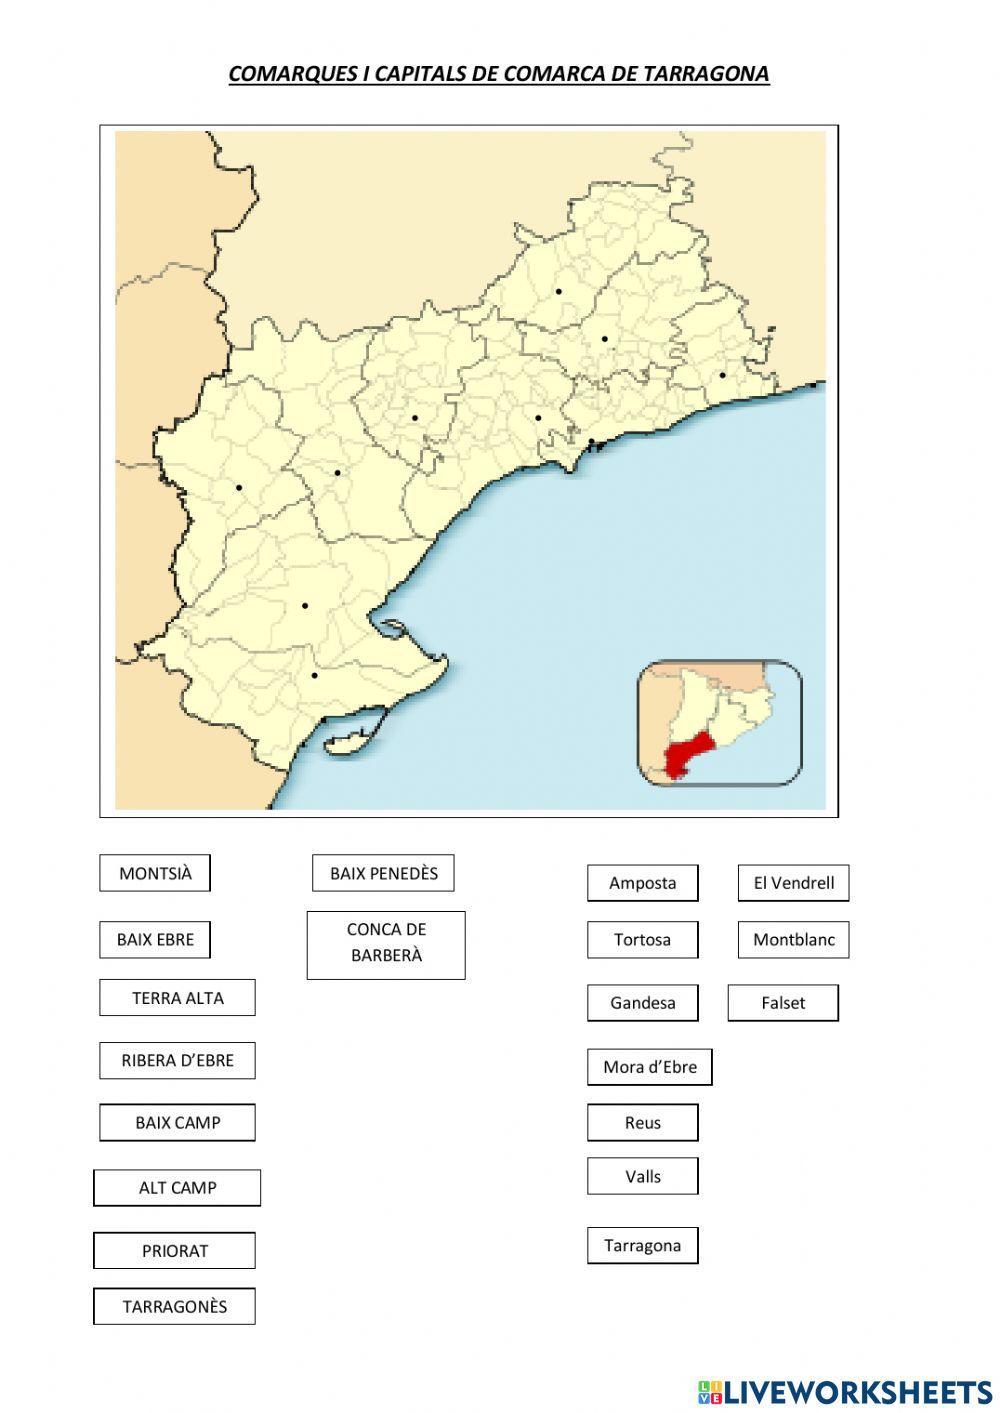 Situar comarques i capitals de comarca de Tarragona